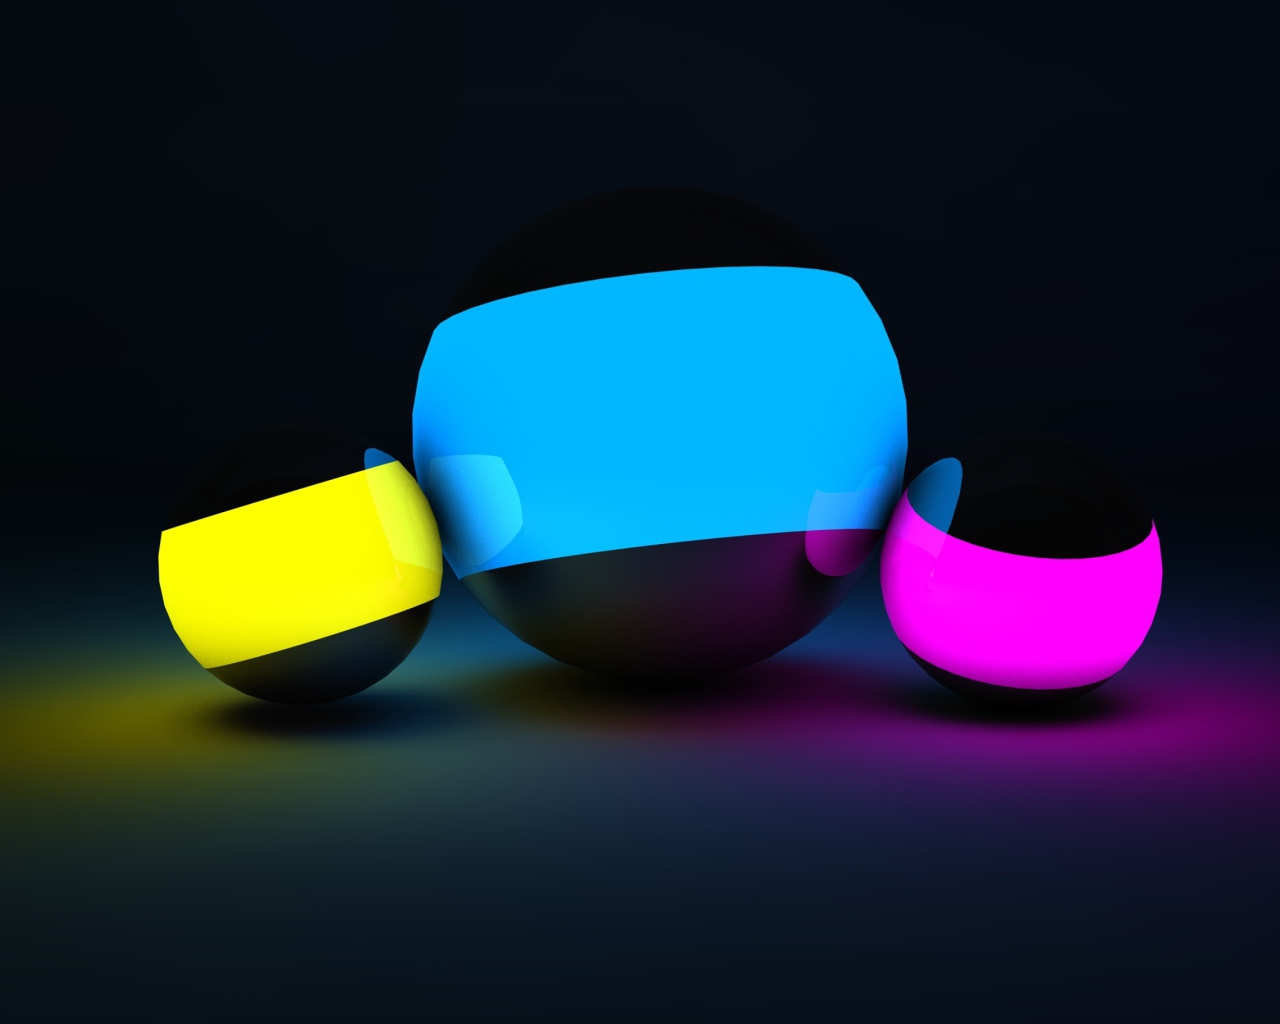 Разноцветные неоновые 3д шары на черном фоне